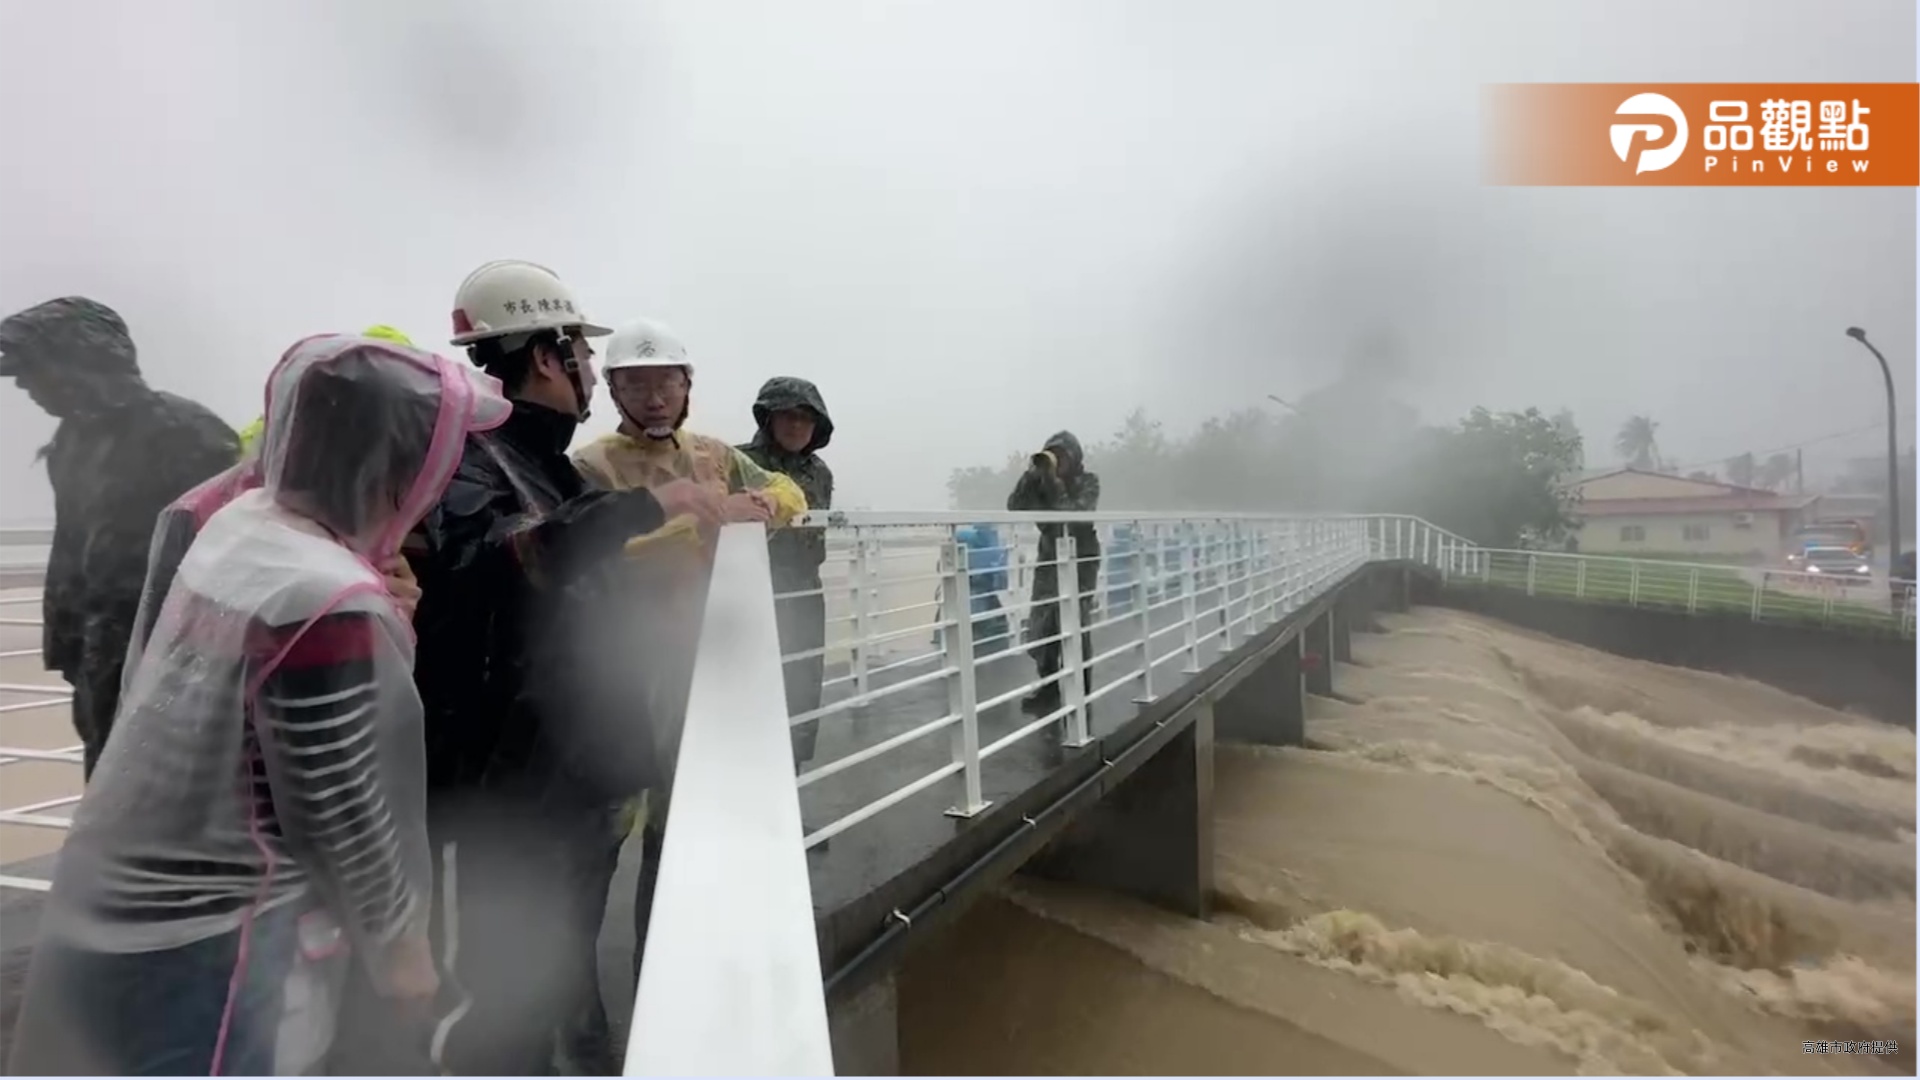 凱米強颱高雄累積雨量已破千毫米  陳其邁至美濃勘災 籲提高警覺注意安全